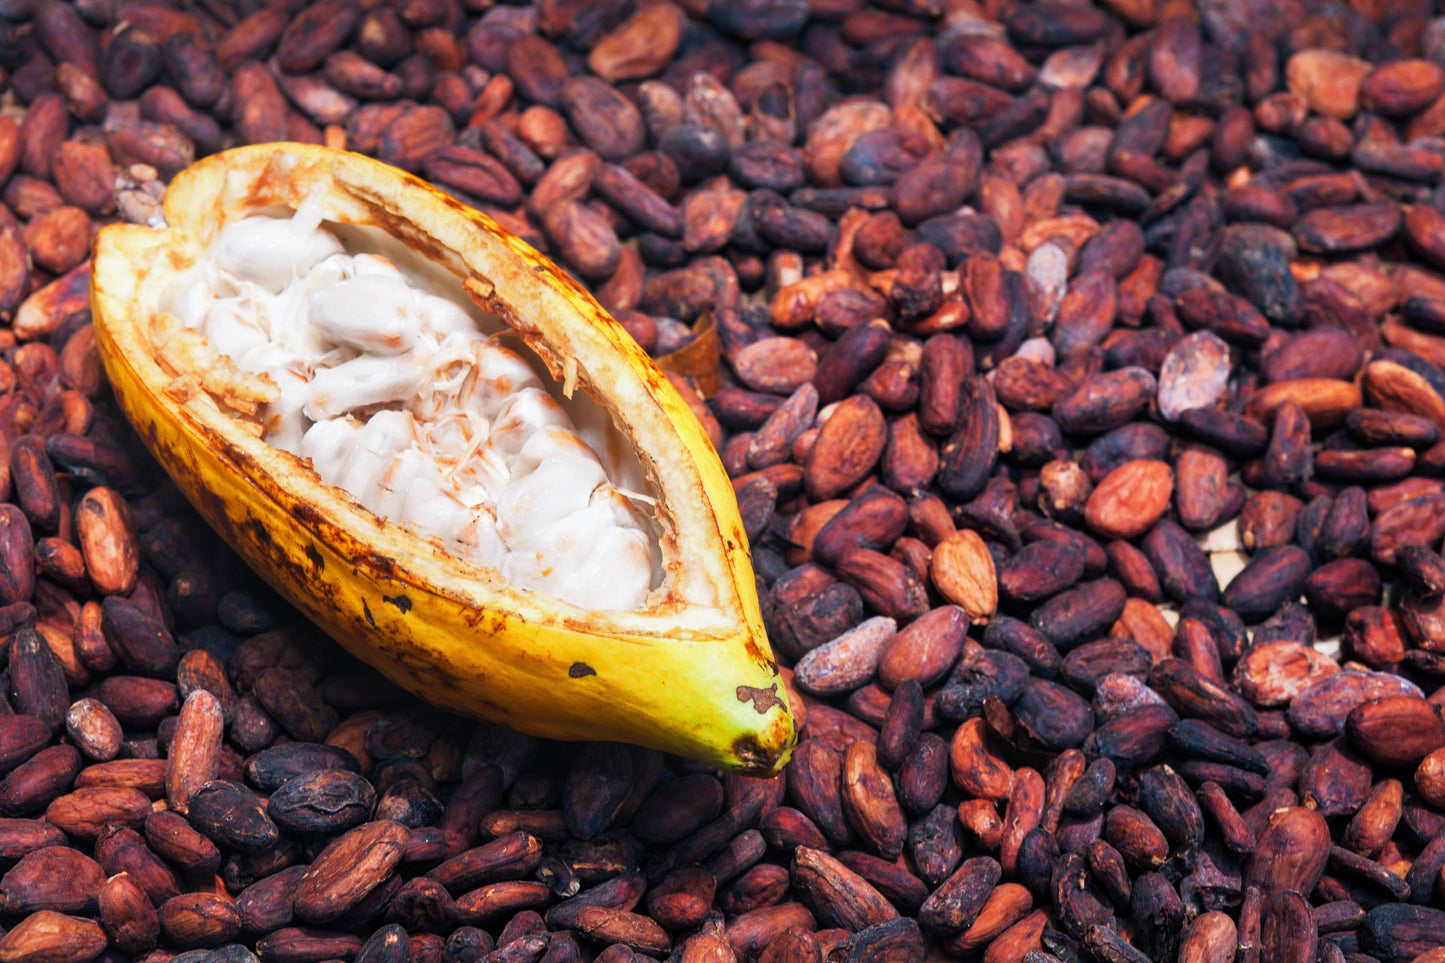 Organic Peruvian cacao pods and cacao powder.